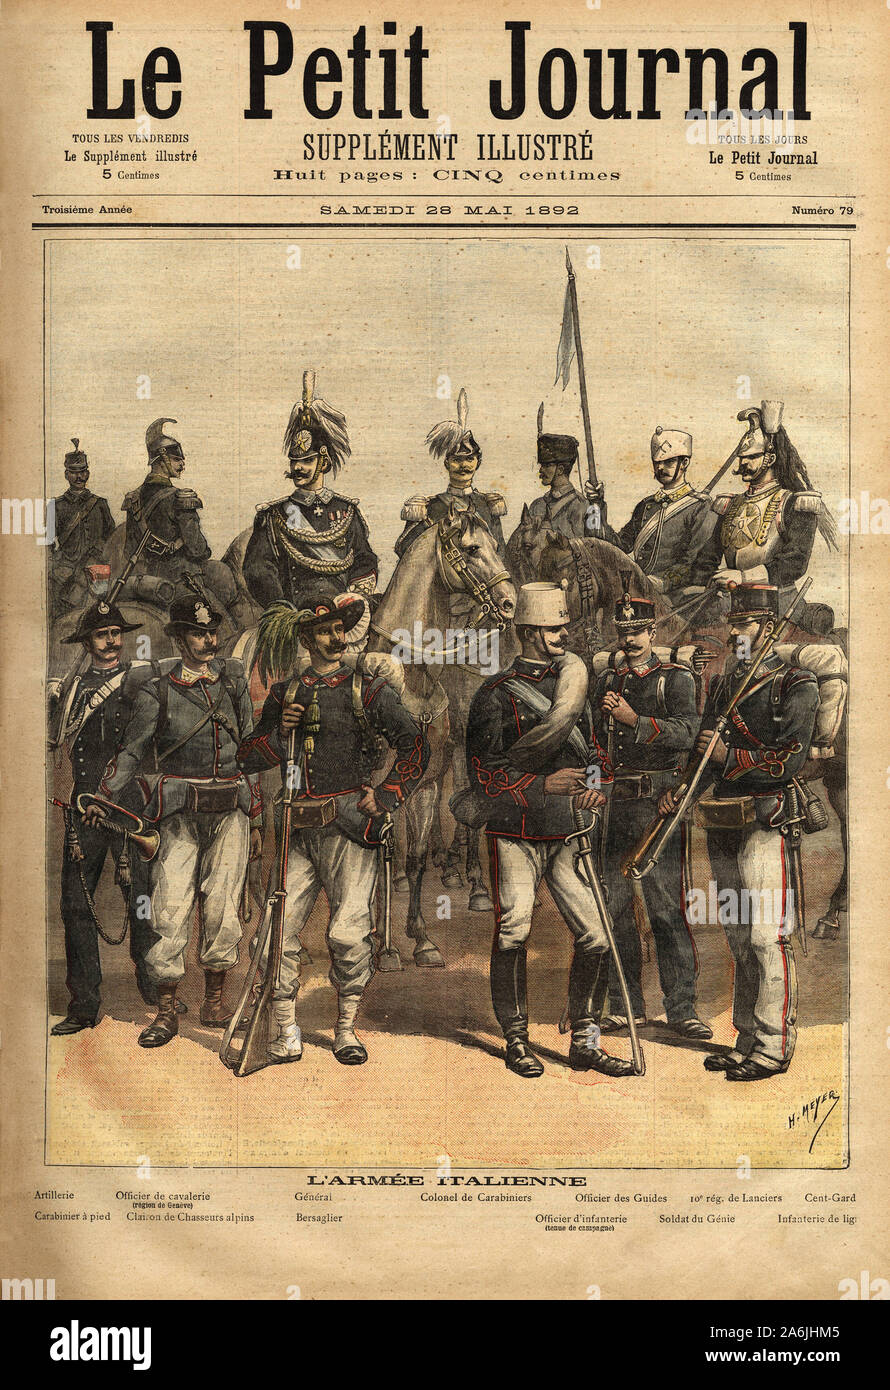 Les uniformes de l'armee italienne, a cheval de gauche a droite: l'artillerie, l'officier de cavalerie, le general, le colonel de carabiniers, l'offic Stock Photo